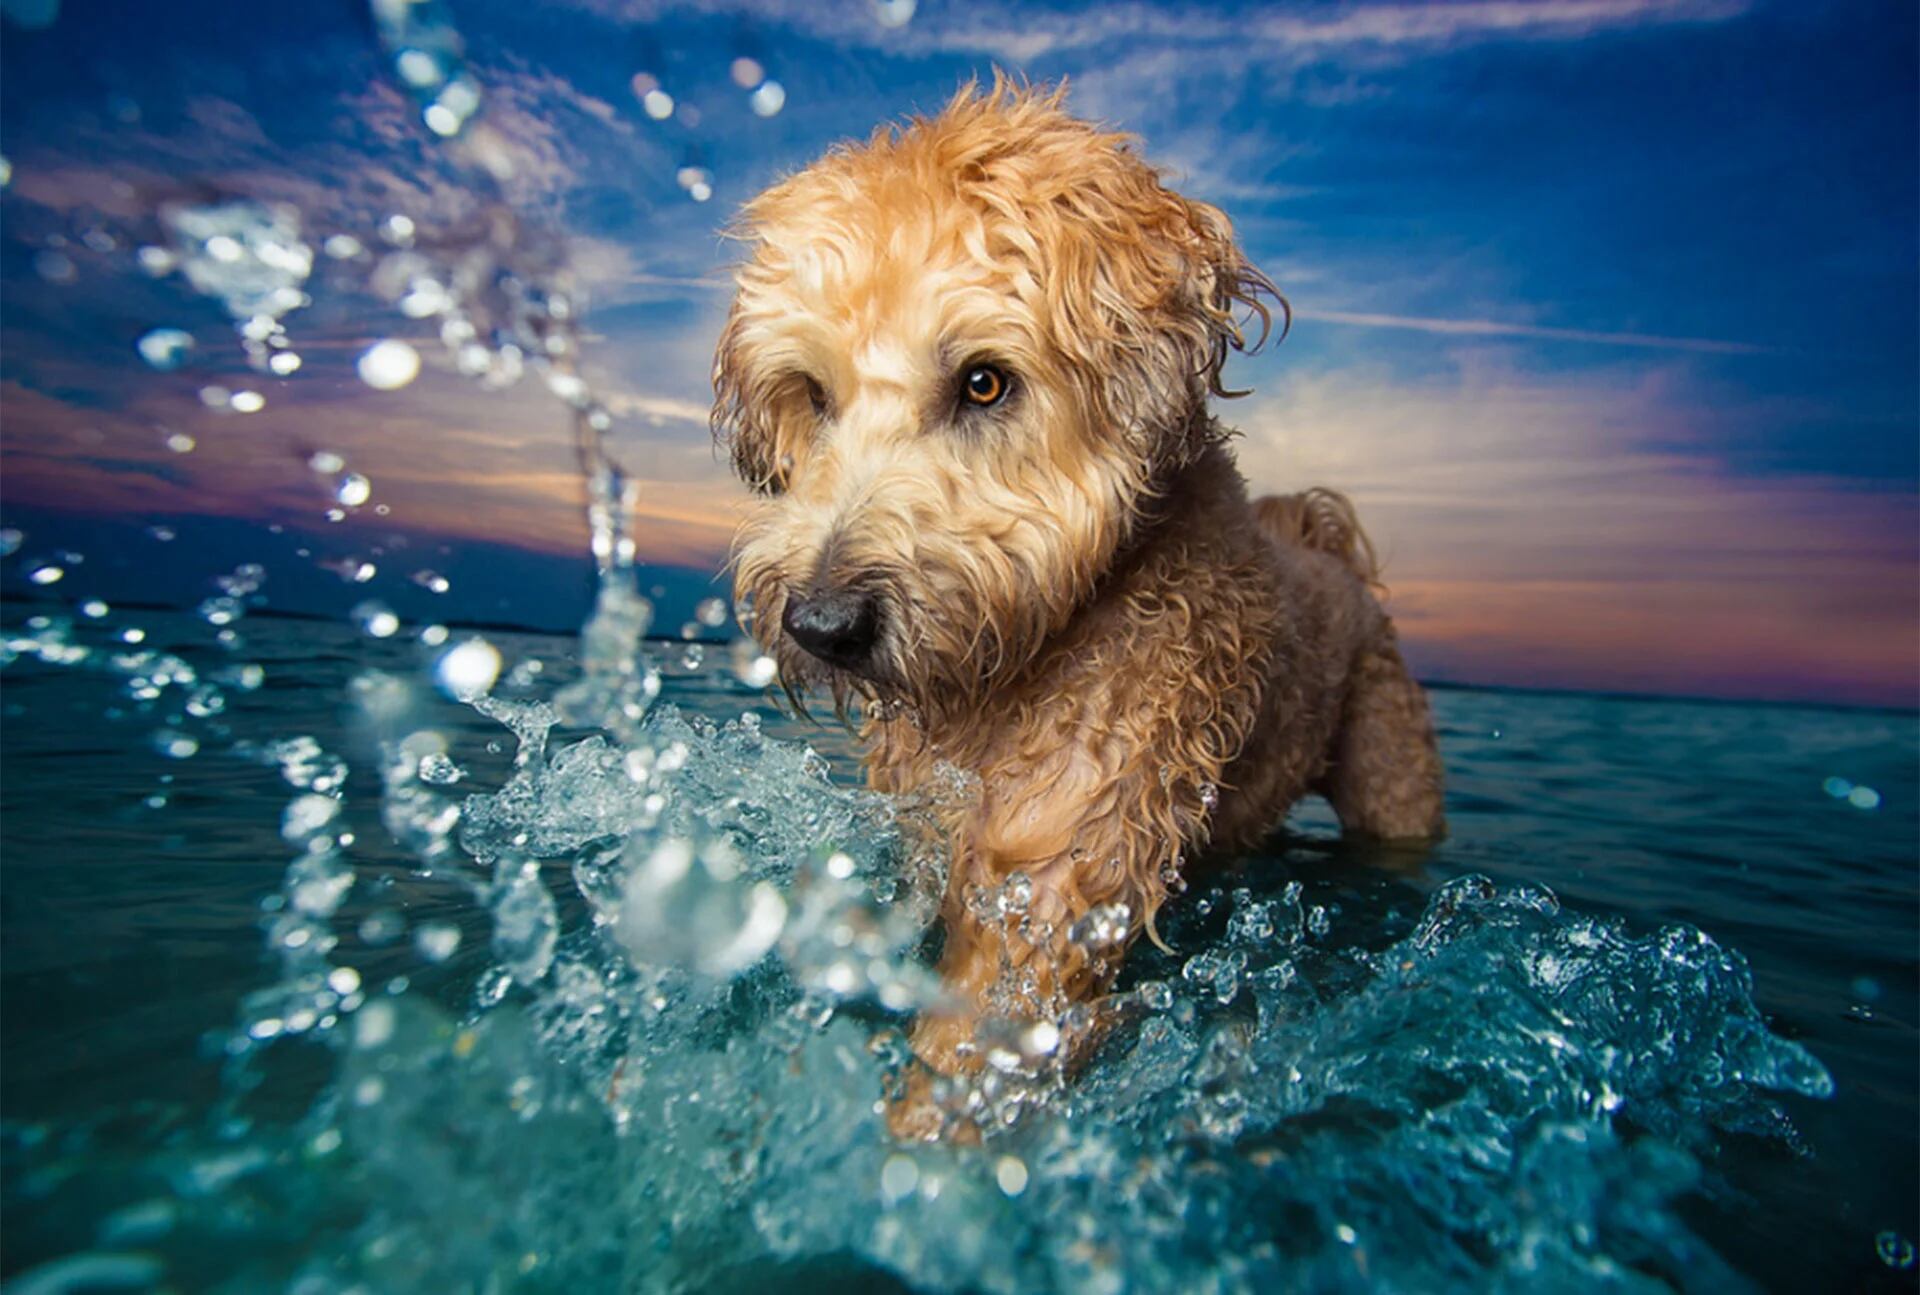 Categoría Perros jugando. La terrier Petey fue retratada jugando en la costa de Boston, Massachusets (© Kaylee Greer)